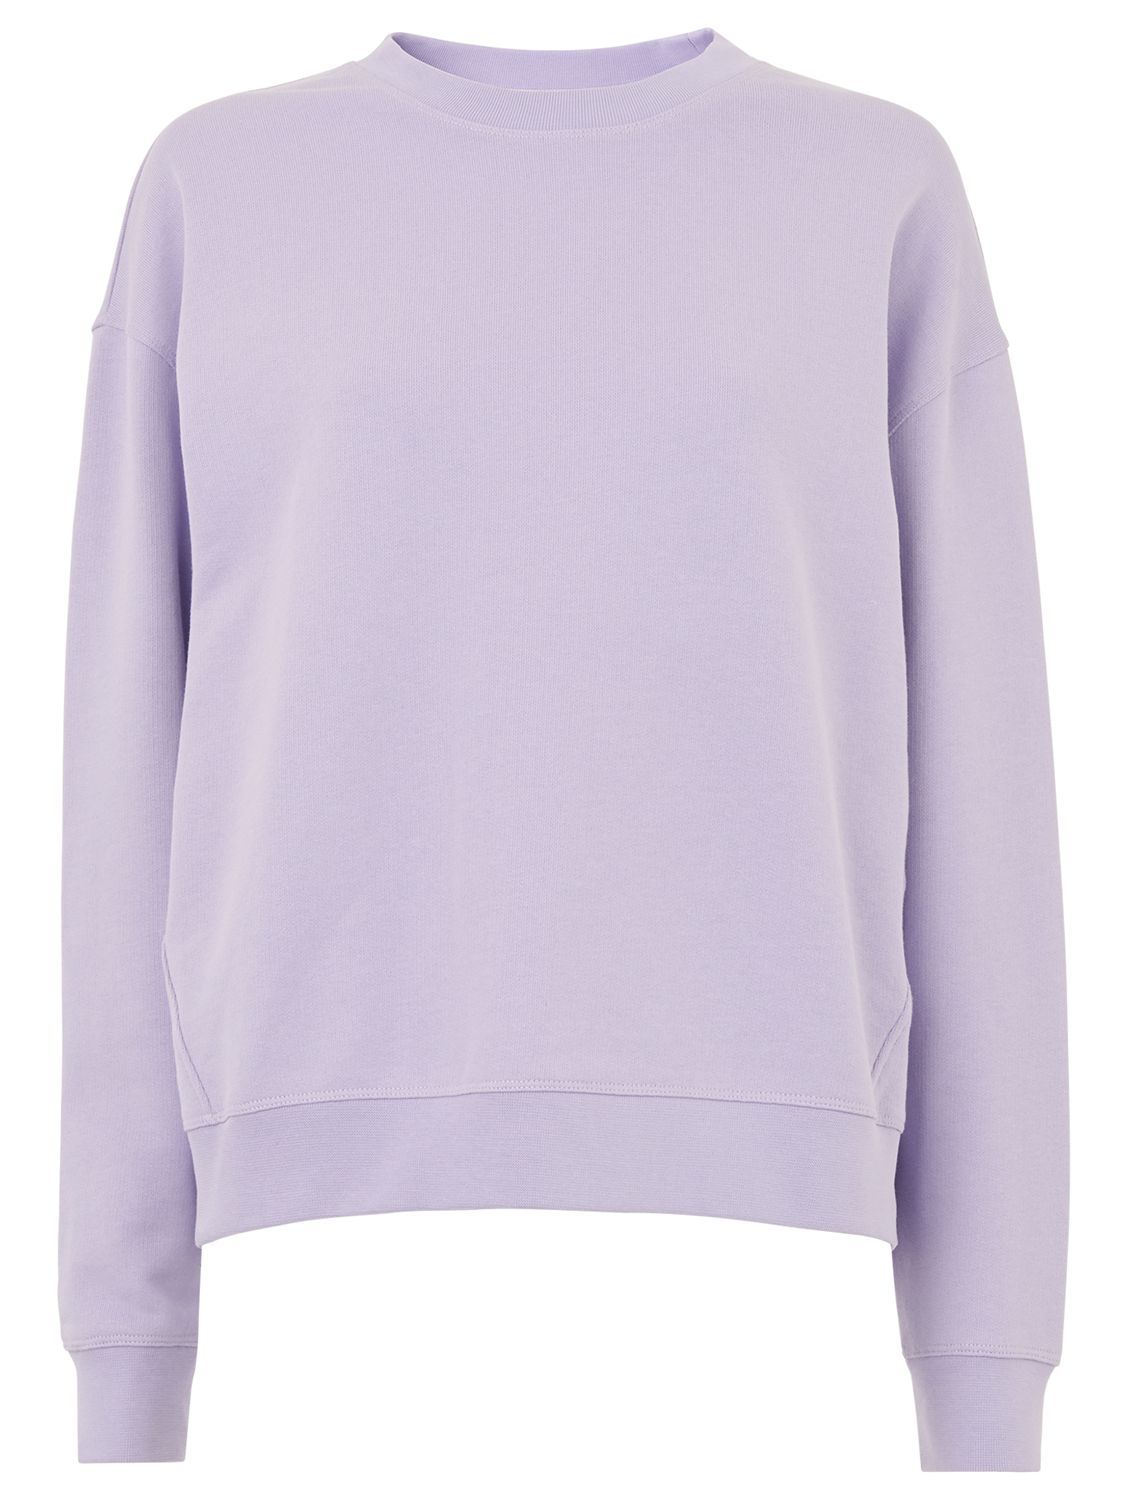 lilac oversized sweatshirt